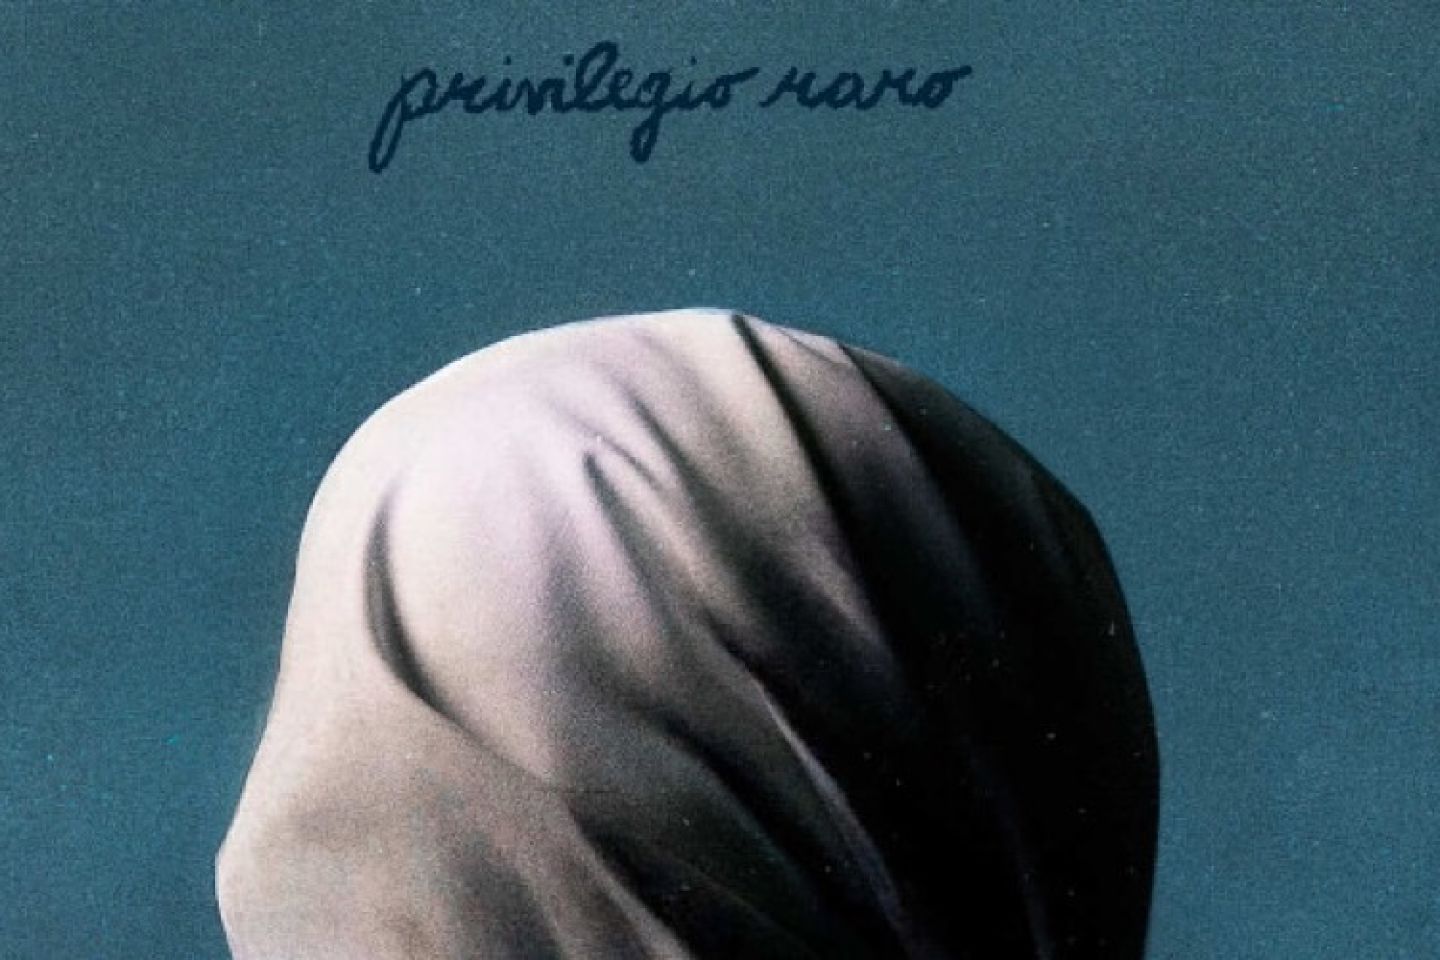 TUTTI FENOMENI: esce oggi a sorpresa “Privilegio raro”, title track del disco fuori il 6 maggio (42 Records/Epic Records Italy)